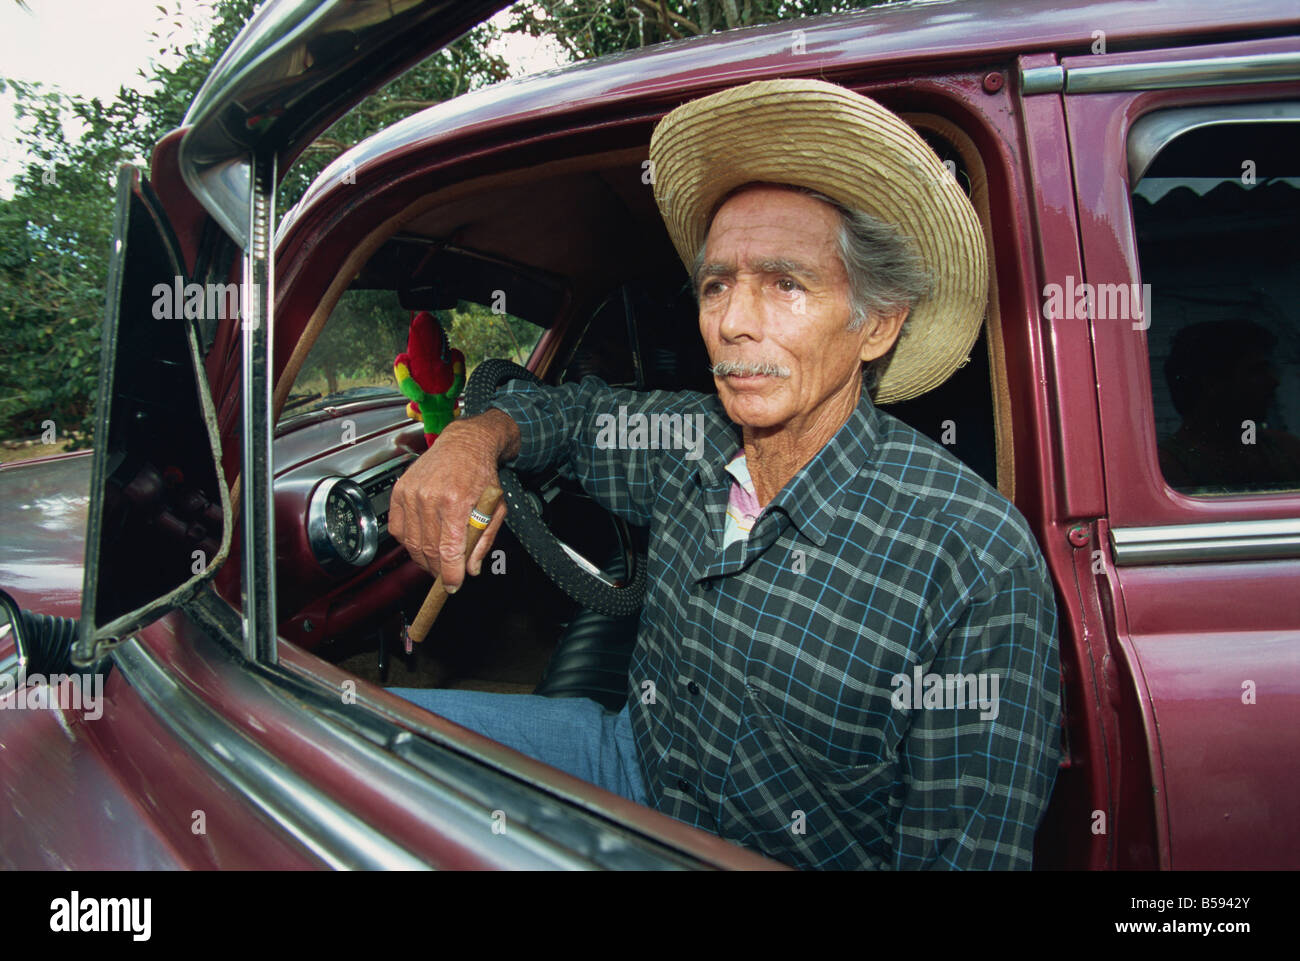 Ein Mann sitzt in einem 1950 Apos s American Auto Pinar Del Rio Provinz Kuba G Hellier Stockfoto